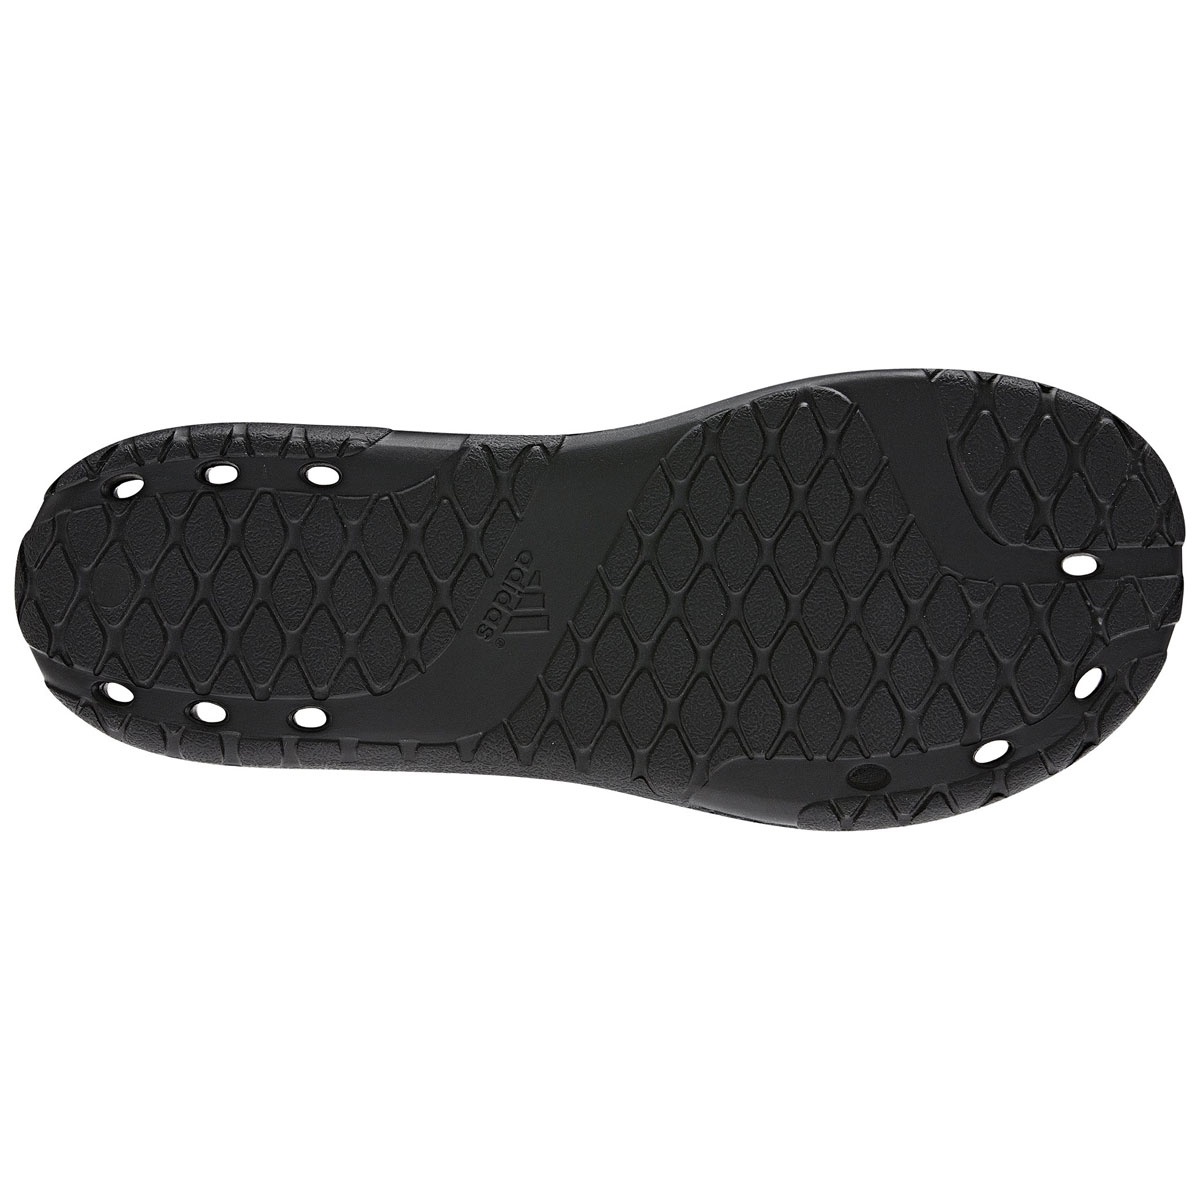 пантолеты CARUVO VARIO (G14440) в интернет-магазине Олимпа". Обувь для бассейна ADIDAS CARUVO VARIO - заказать с доставкой по РФ.